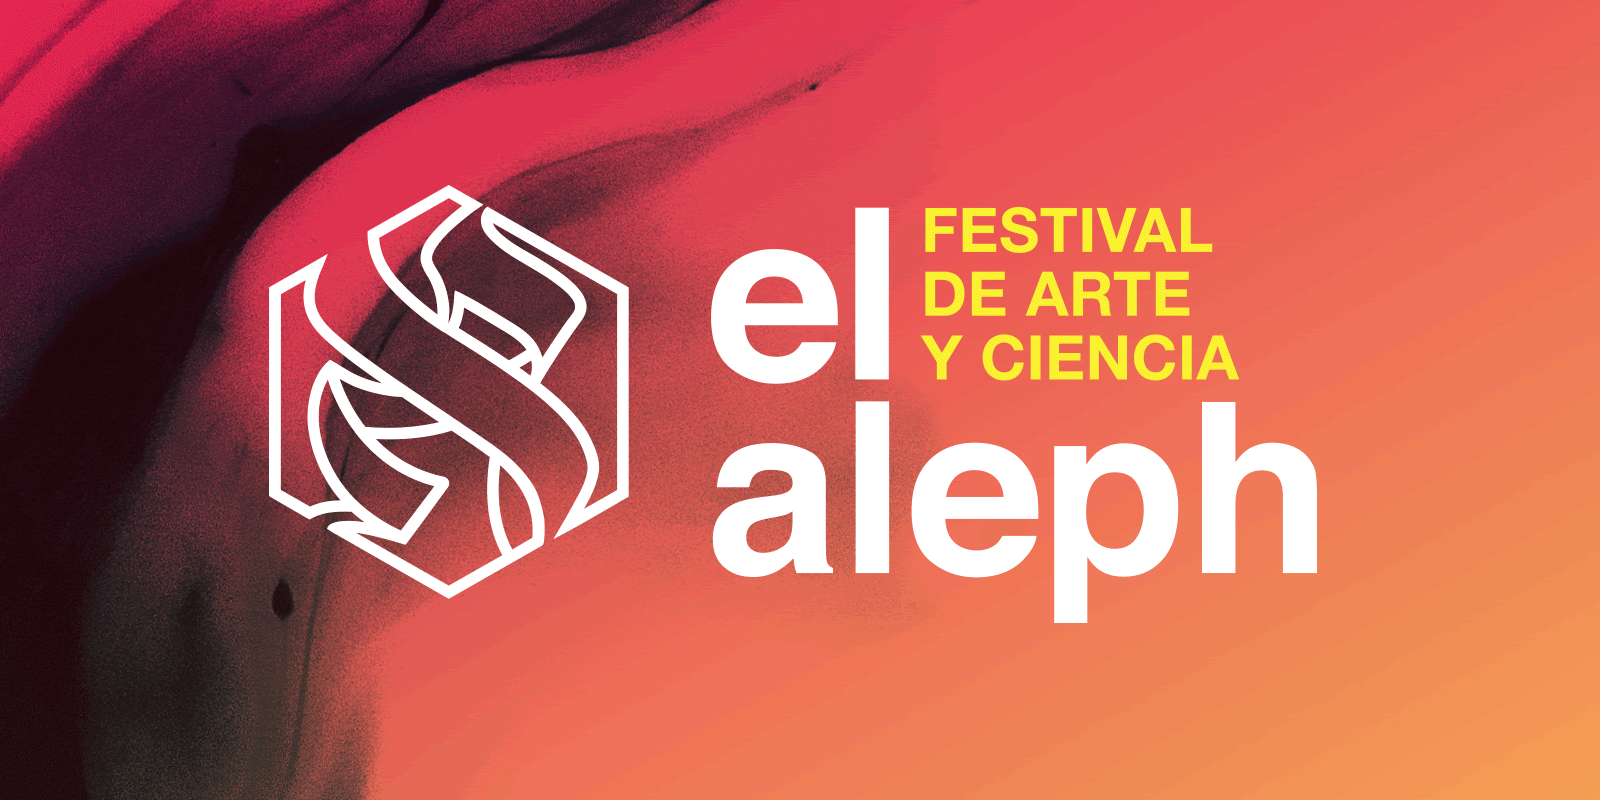 Transmisión: Este jueves 28 de mayo El Aleph. Festival de Arte y Ciencia tiene para ti